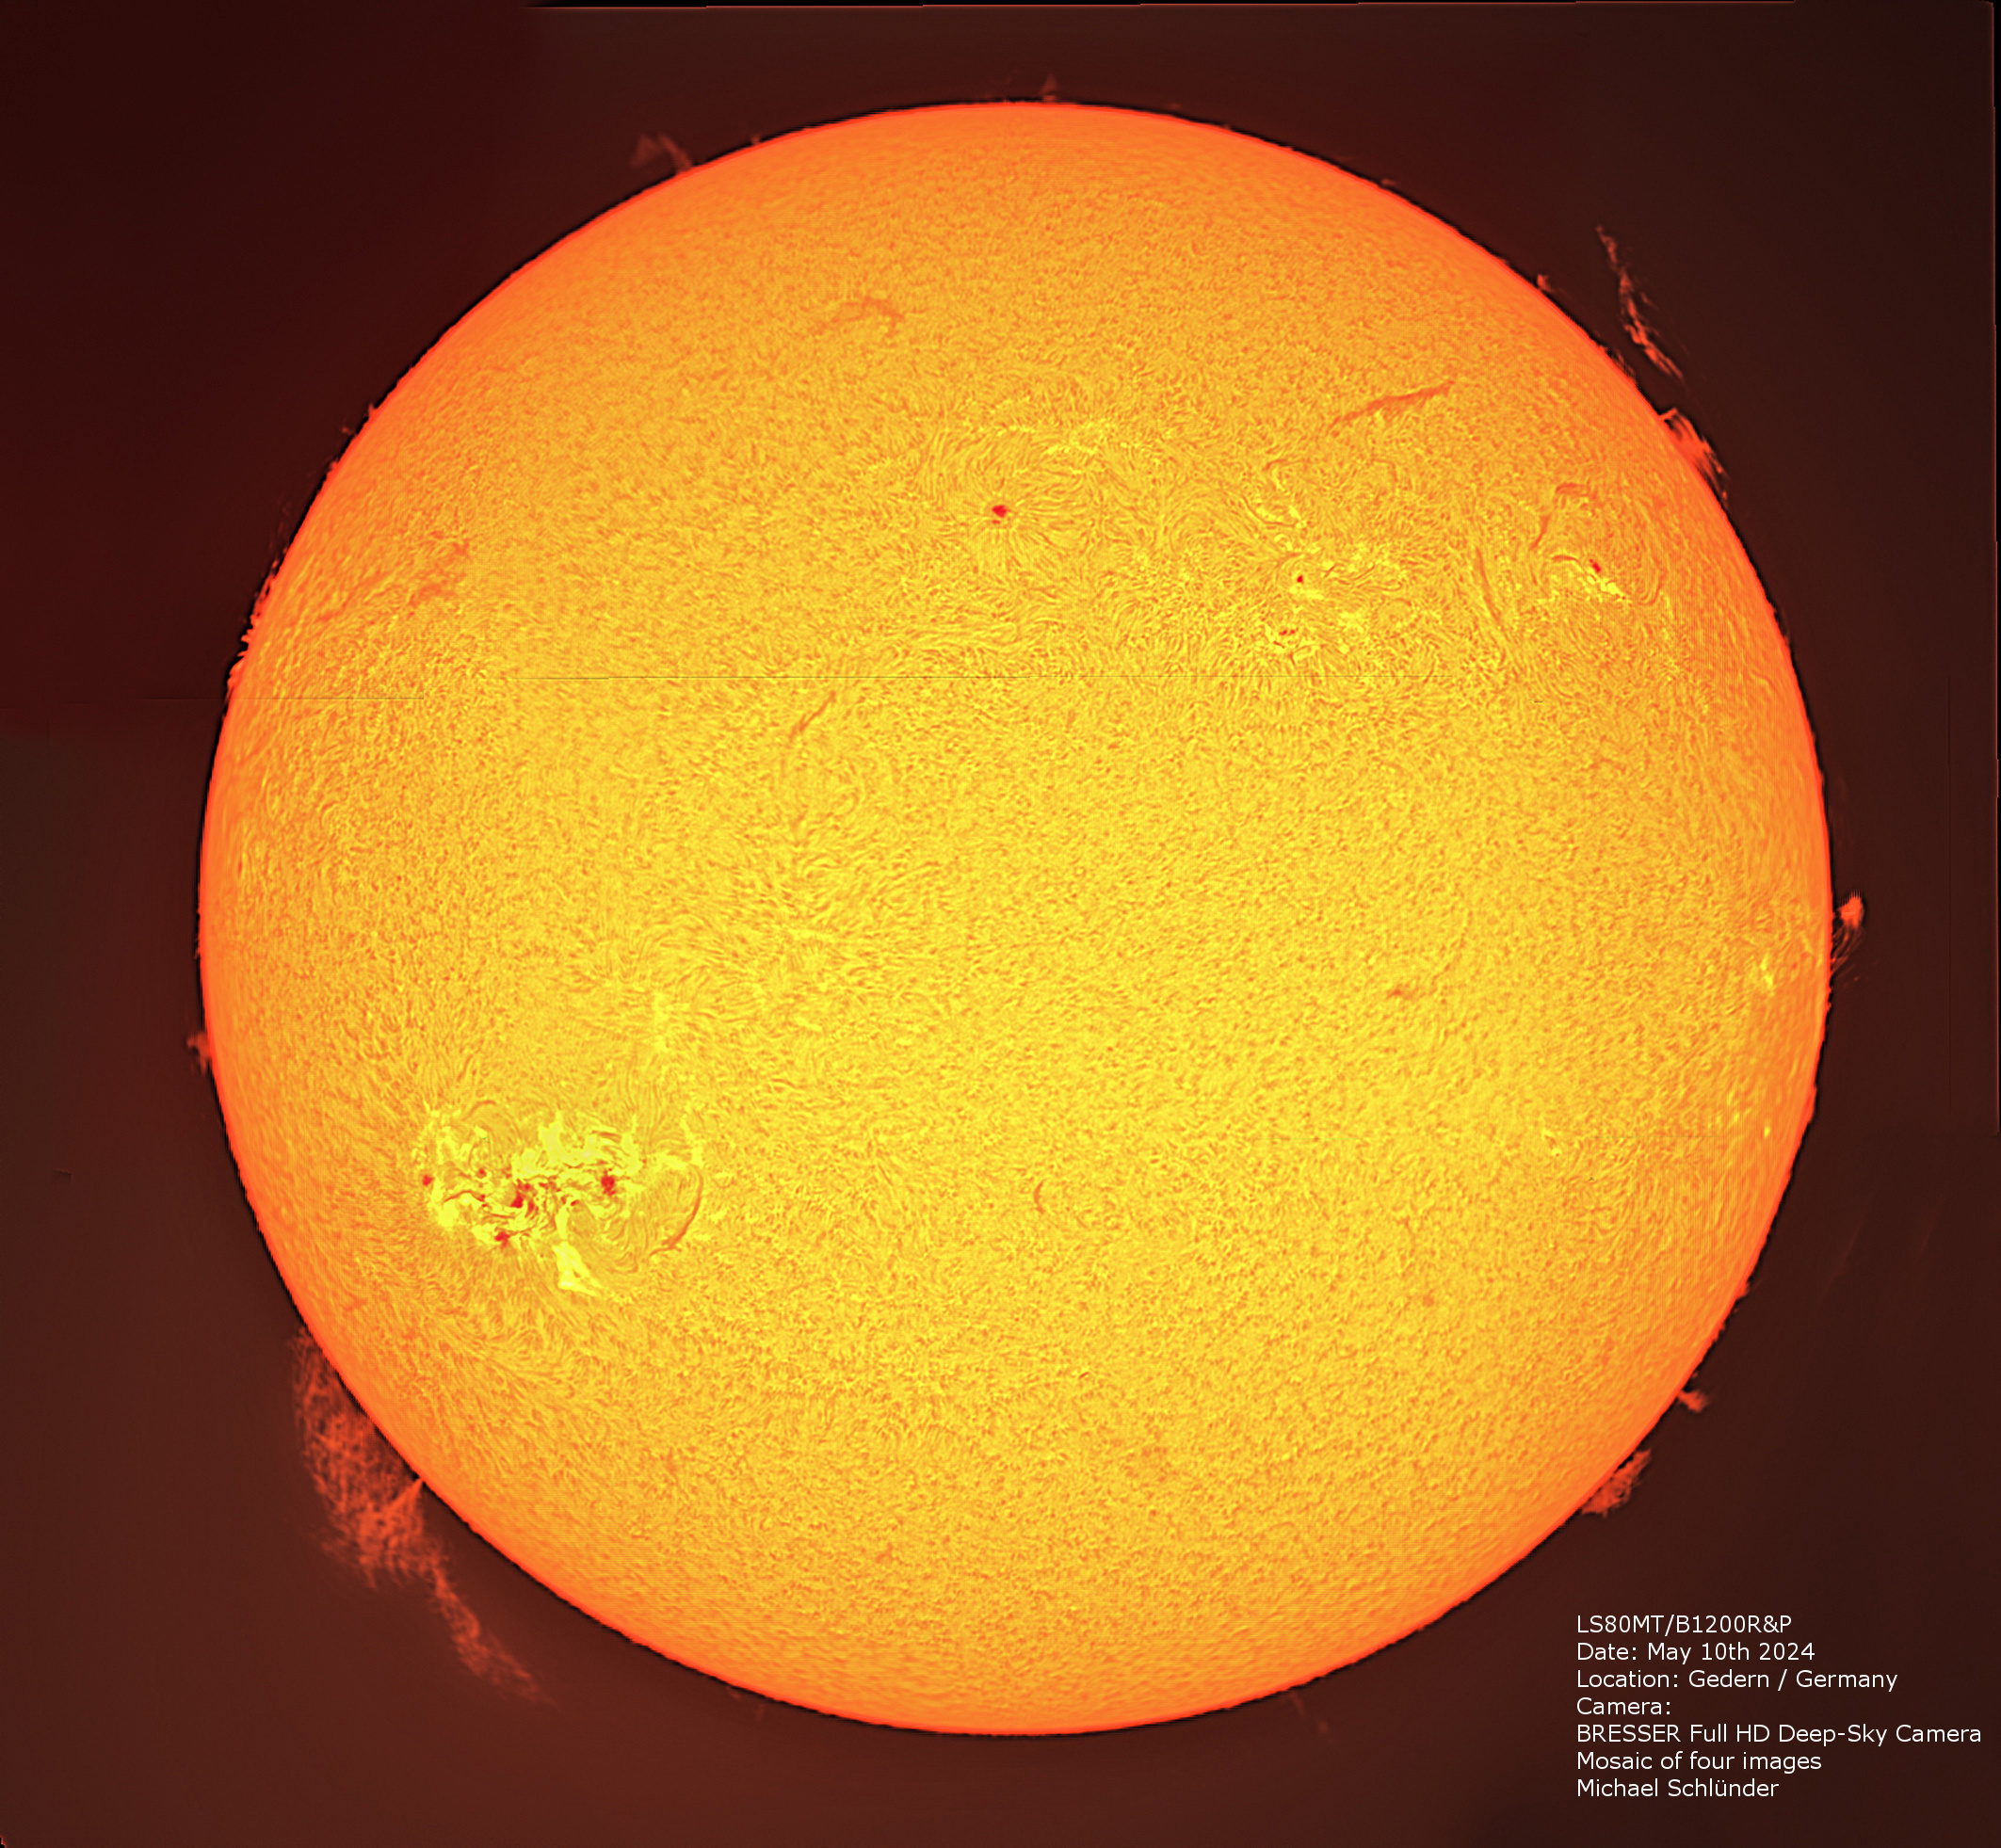 LUNT LS80MT/B1200R&P Télescope APO polyvalent pour le Soleil + la voûte céleste